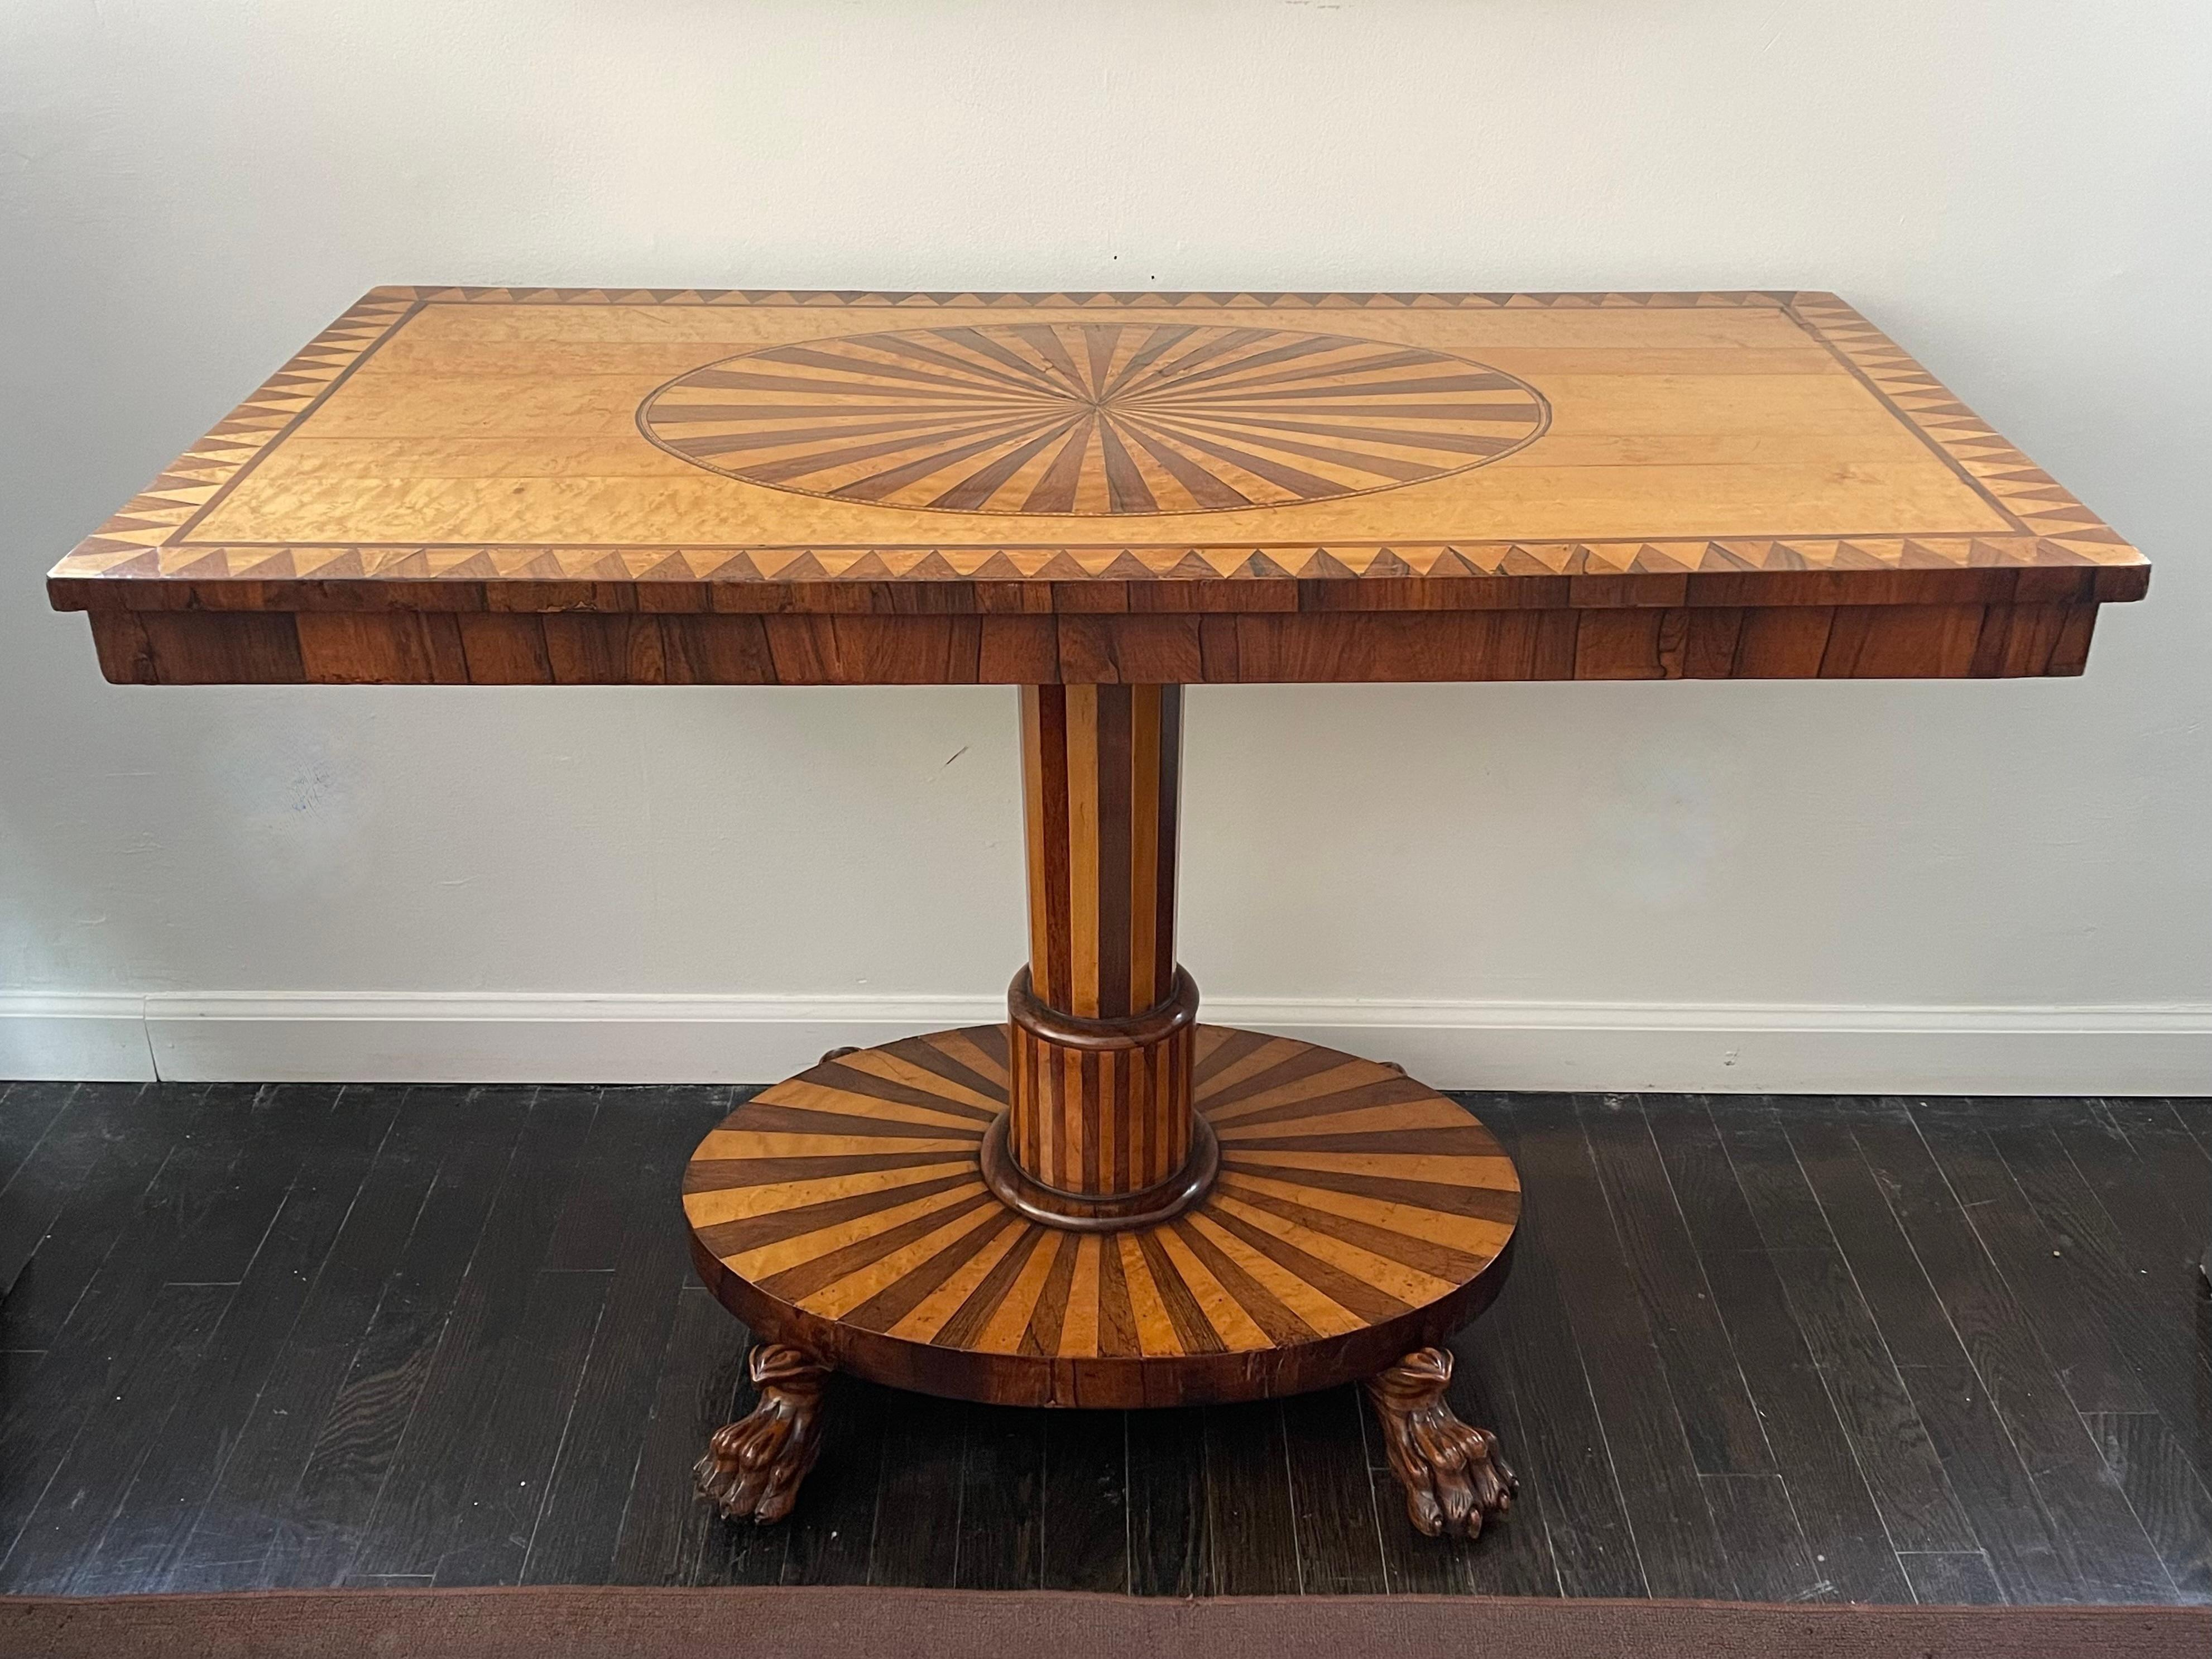 Die kühnen, grafischen und geometrischen Intarsien dieses Tisches aus Satinholz und Palisander erinnern an die Gemälde von Bridget Riley und anderen Op-Art-Künstlern der 1960er Jahre.  Die Musterung erstreckt sich sogar auf die mit Messingrädern